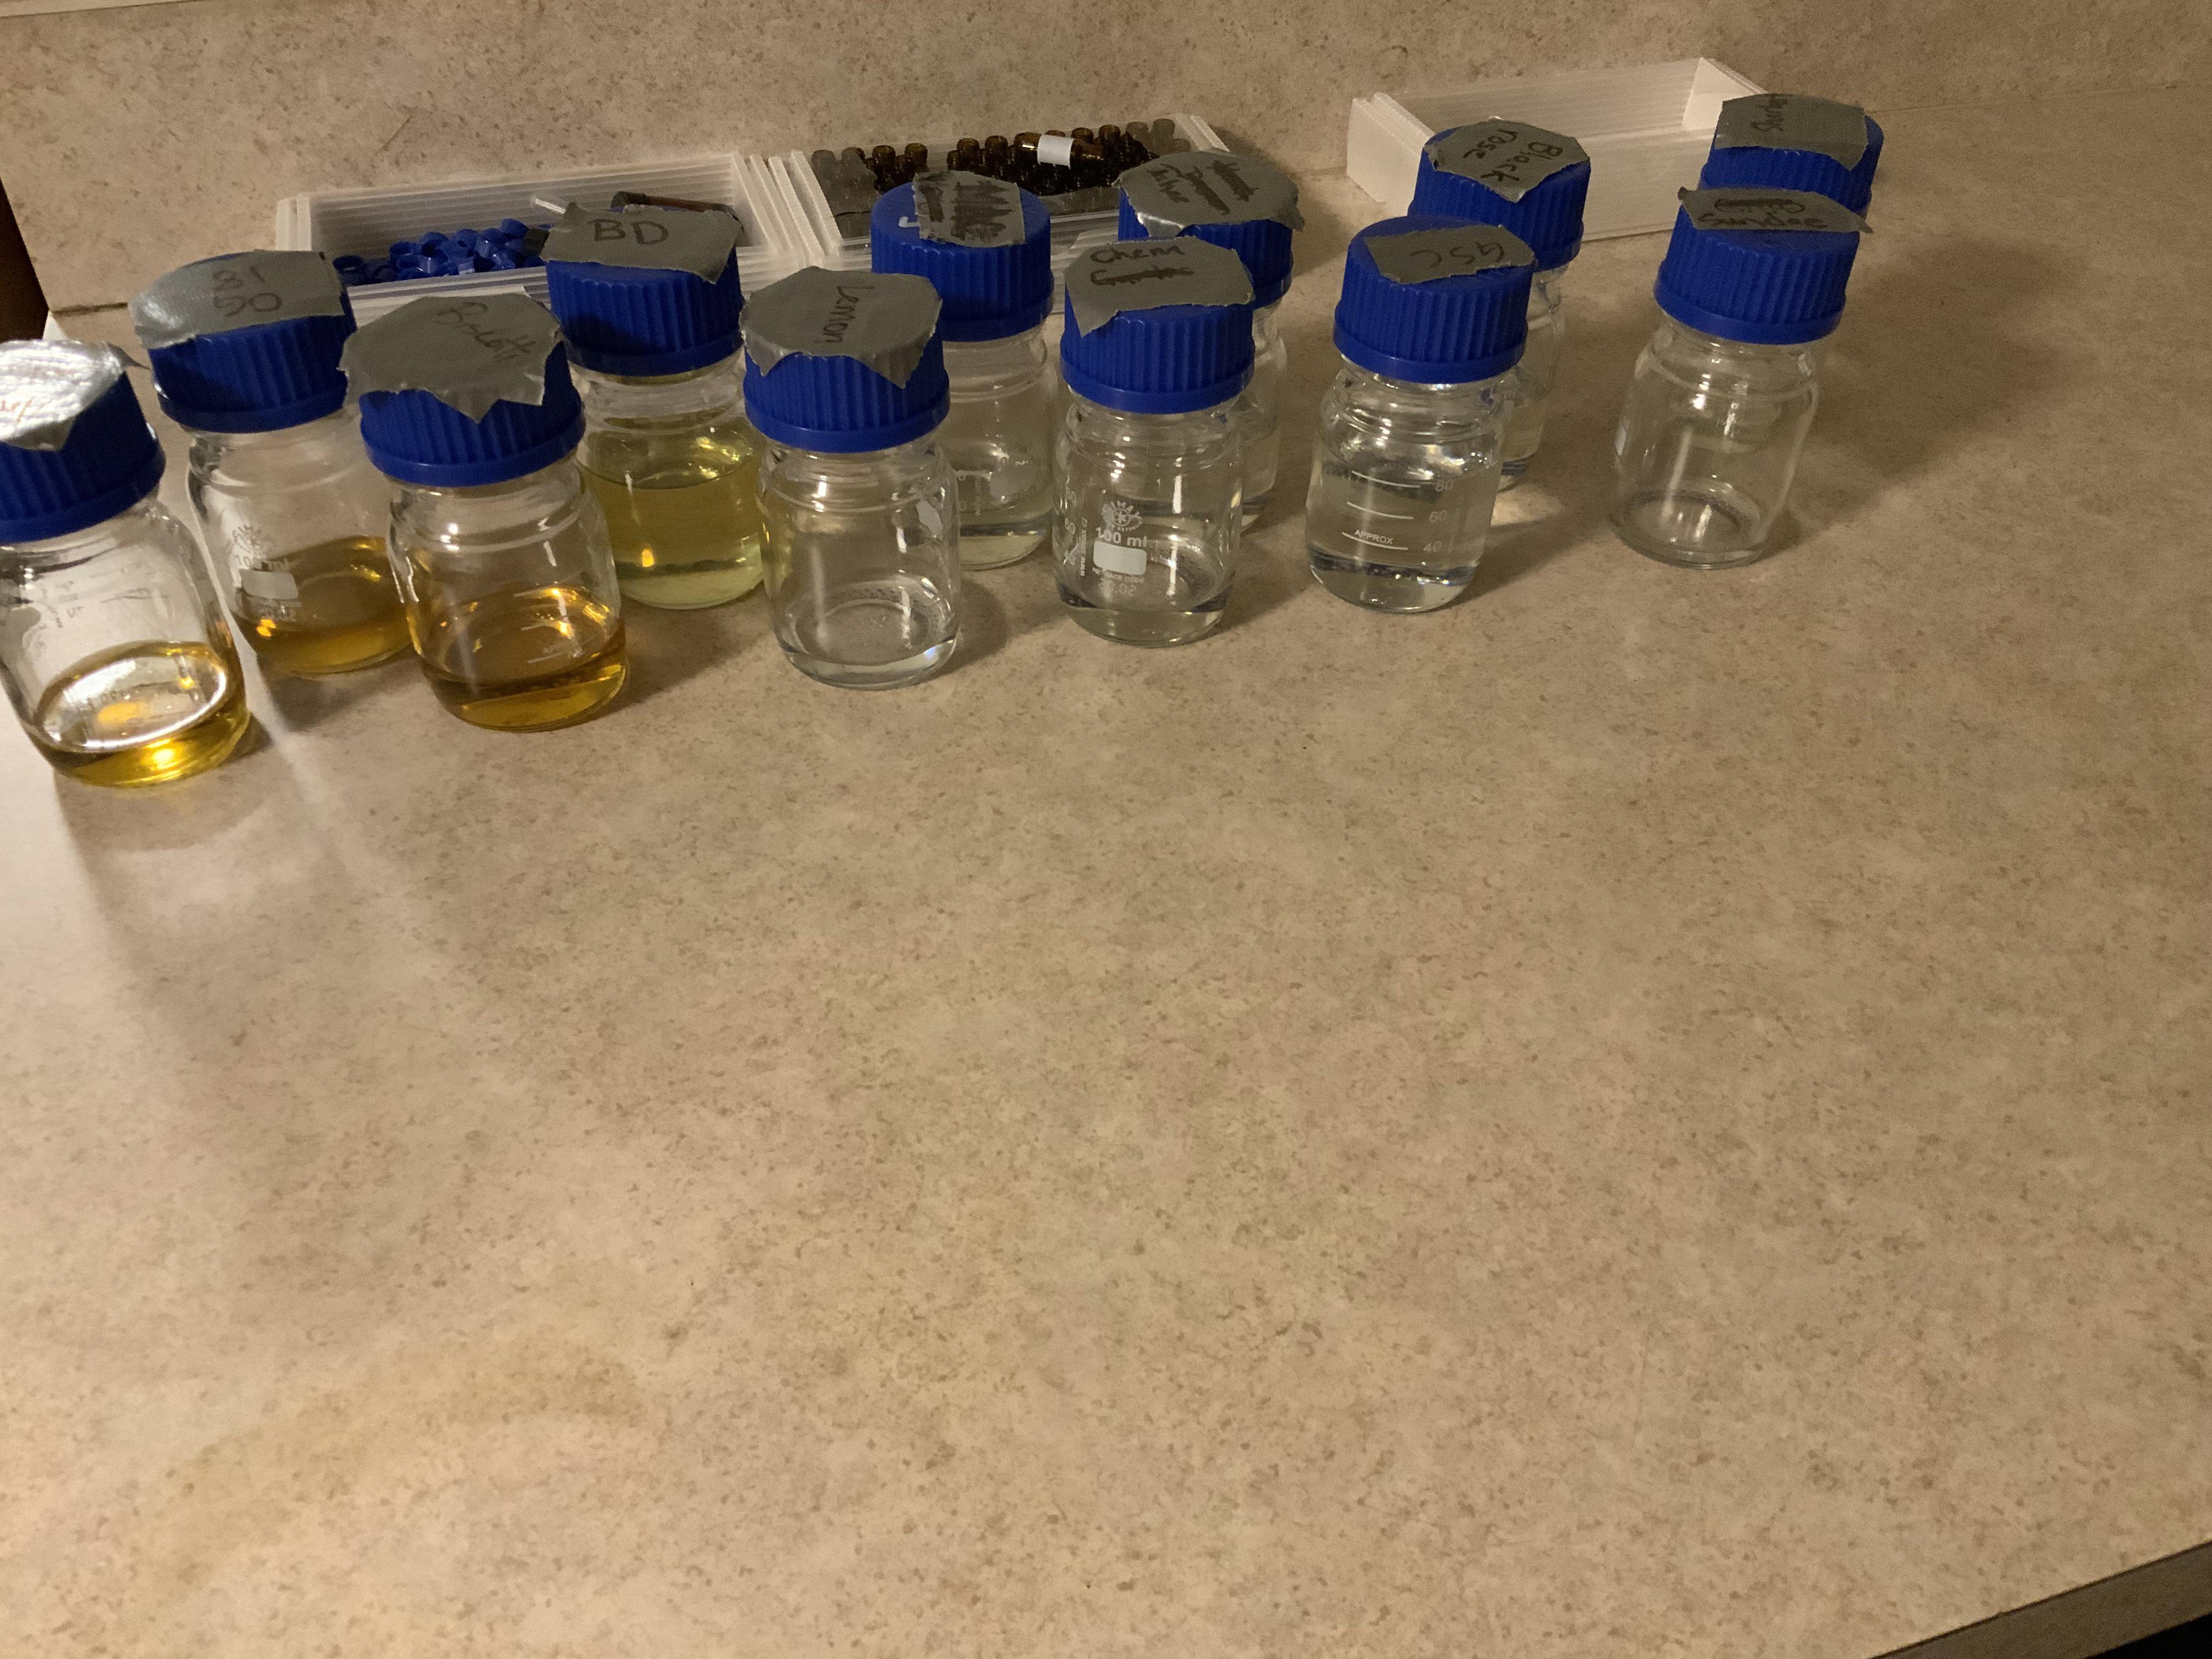 Terpenesraw in small bottles